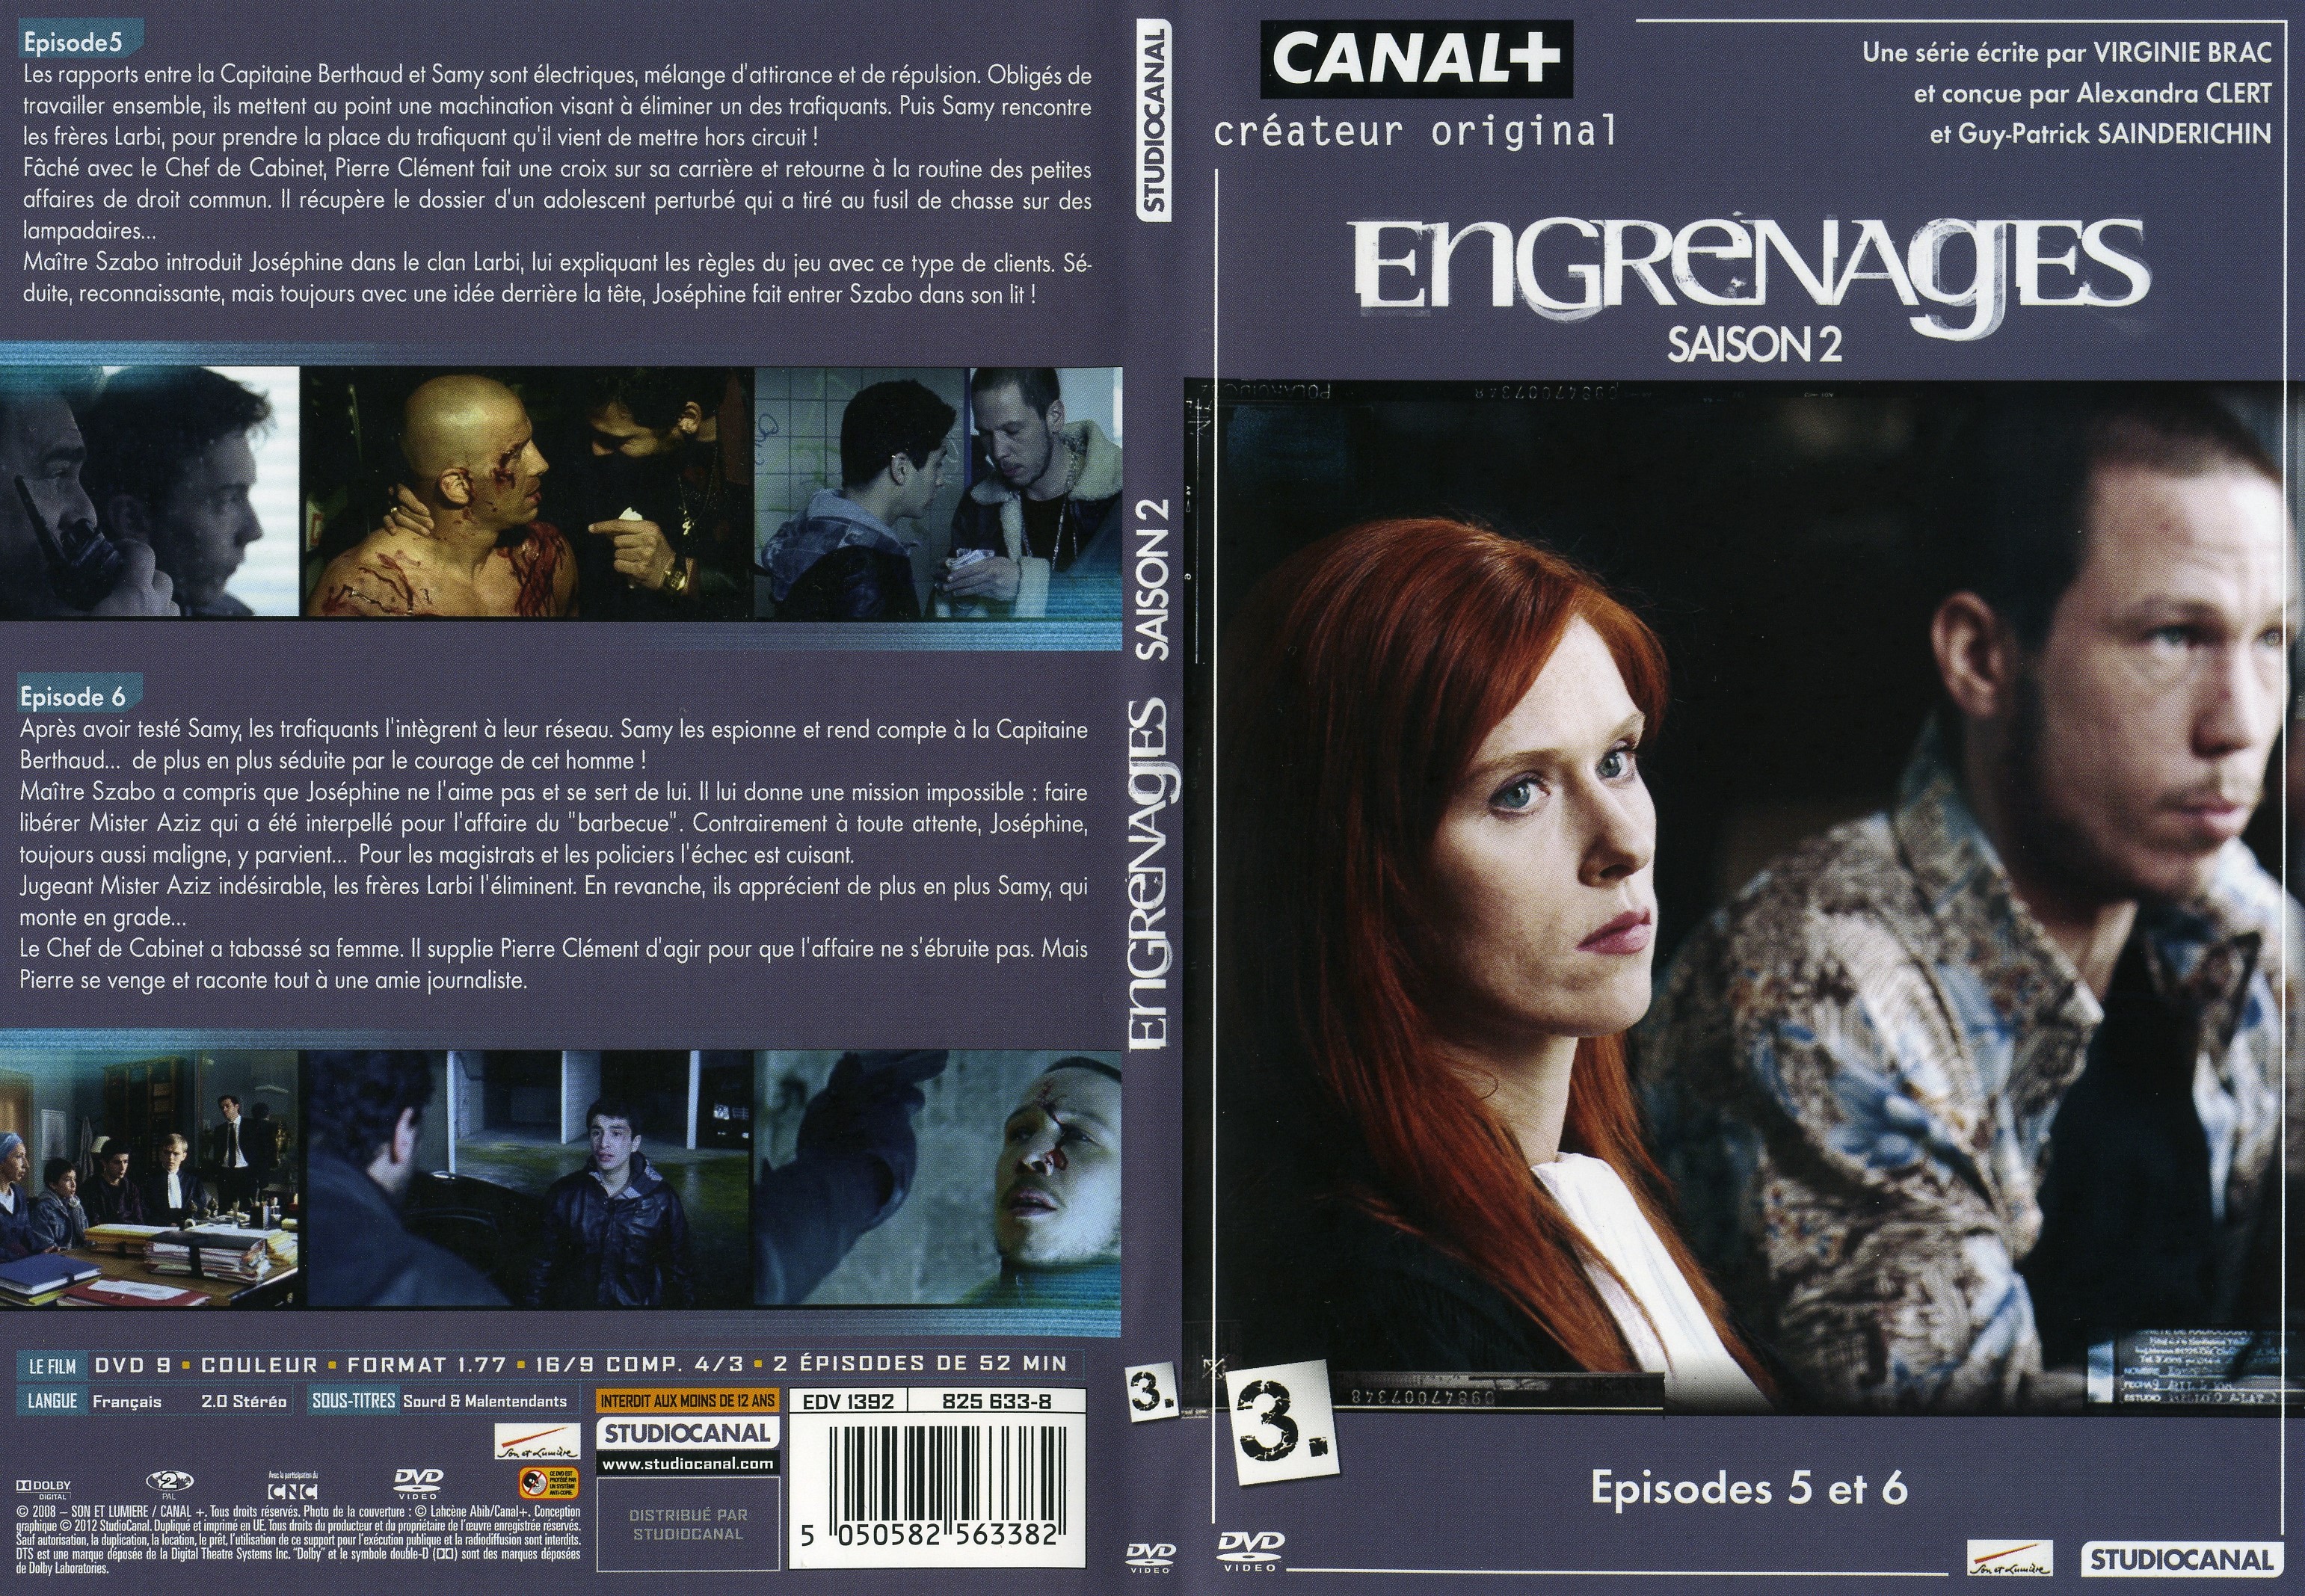 Jaquette DVD Engrenages Saison 2 DVD 3